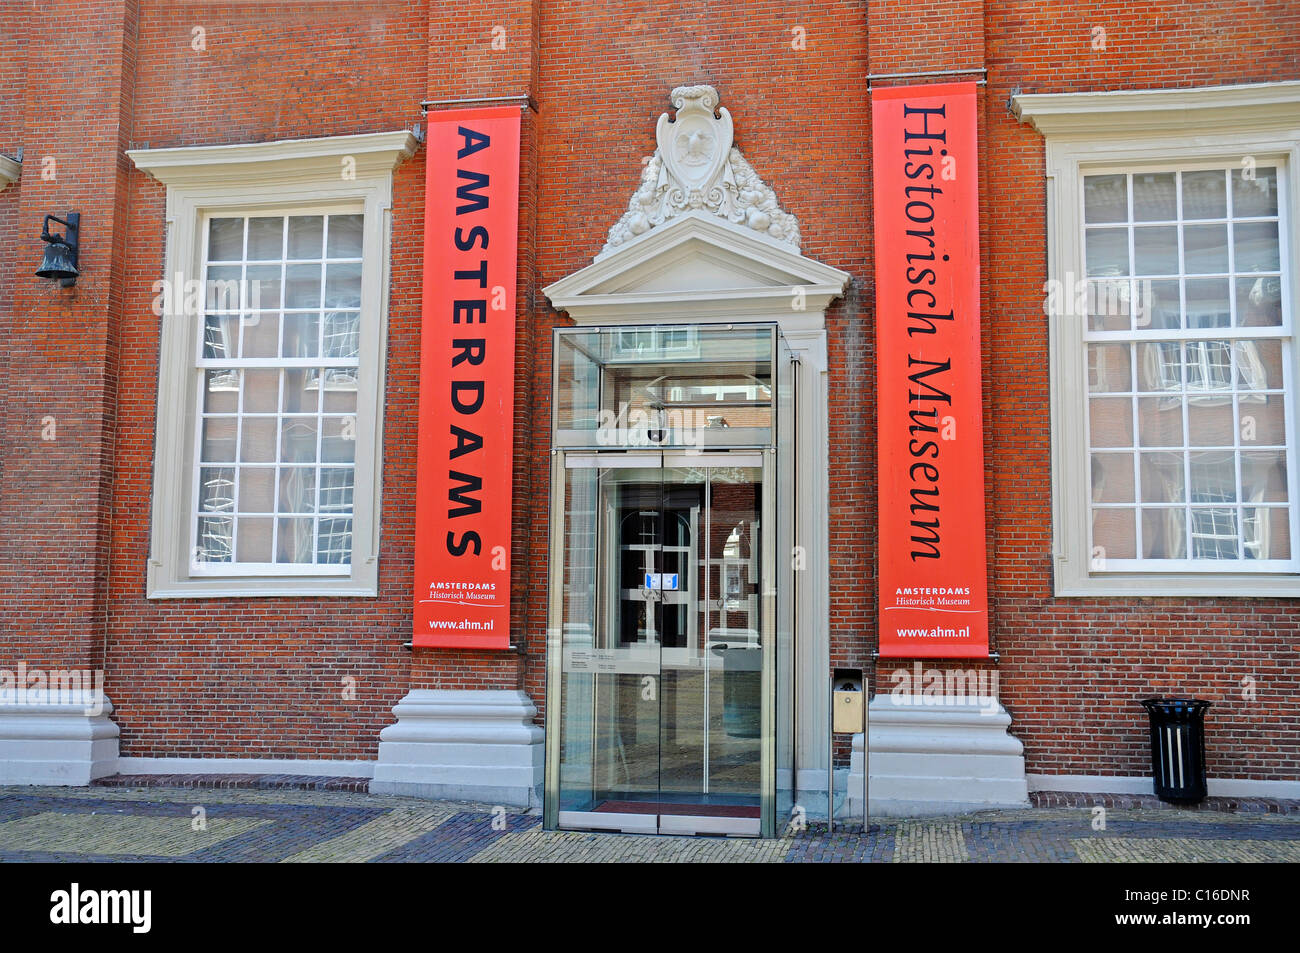 Musée historique, entrée privée, Amsterdam, Hollande, Pays-Bas, Europe Banque D'Images